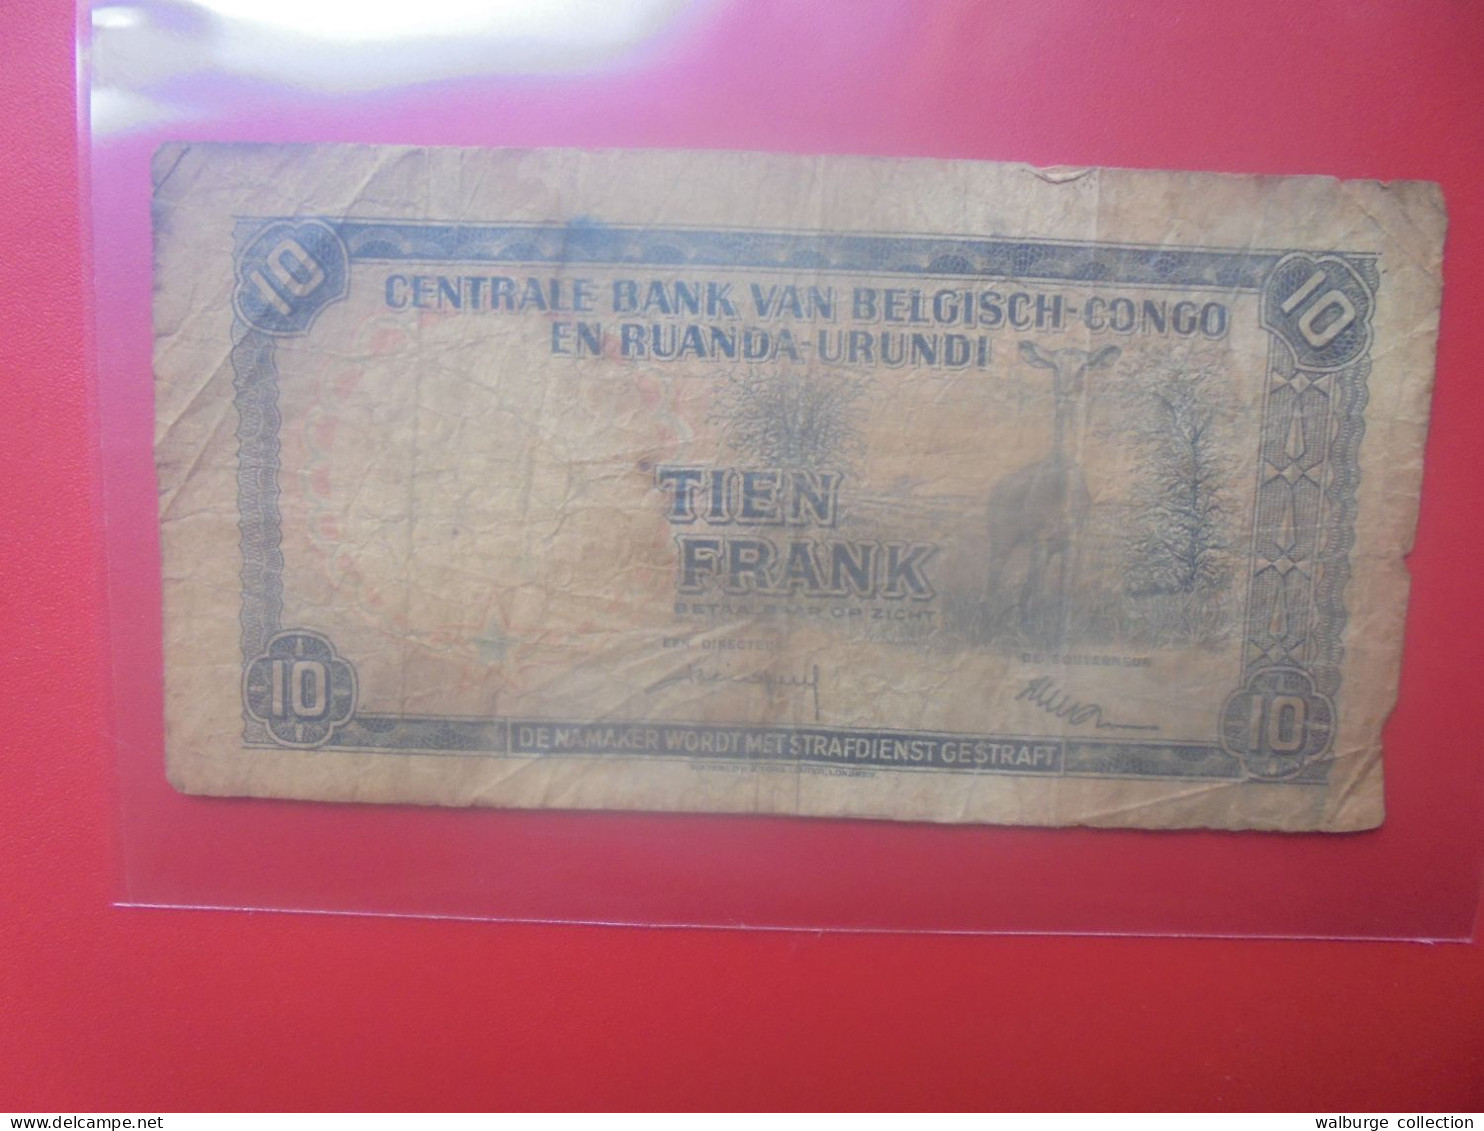 CONGO BELGE 10 FRANCS 1956 Circuler (B.33) - Belgian Congo Bank